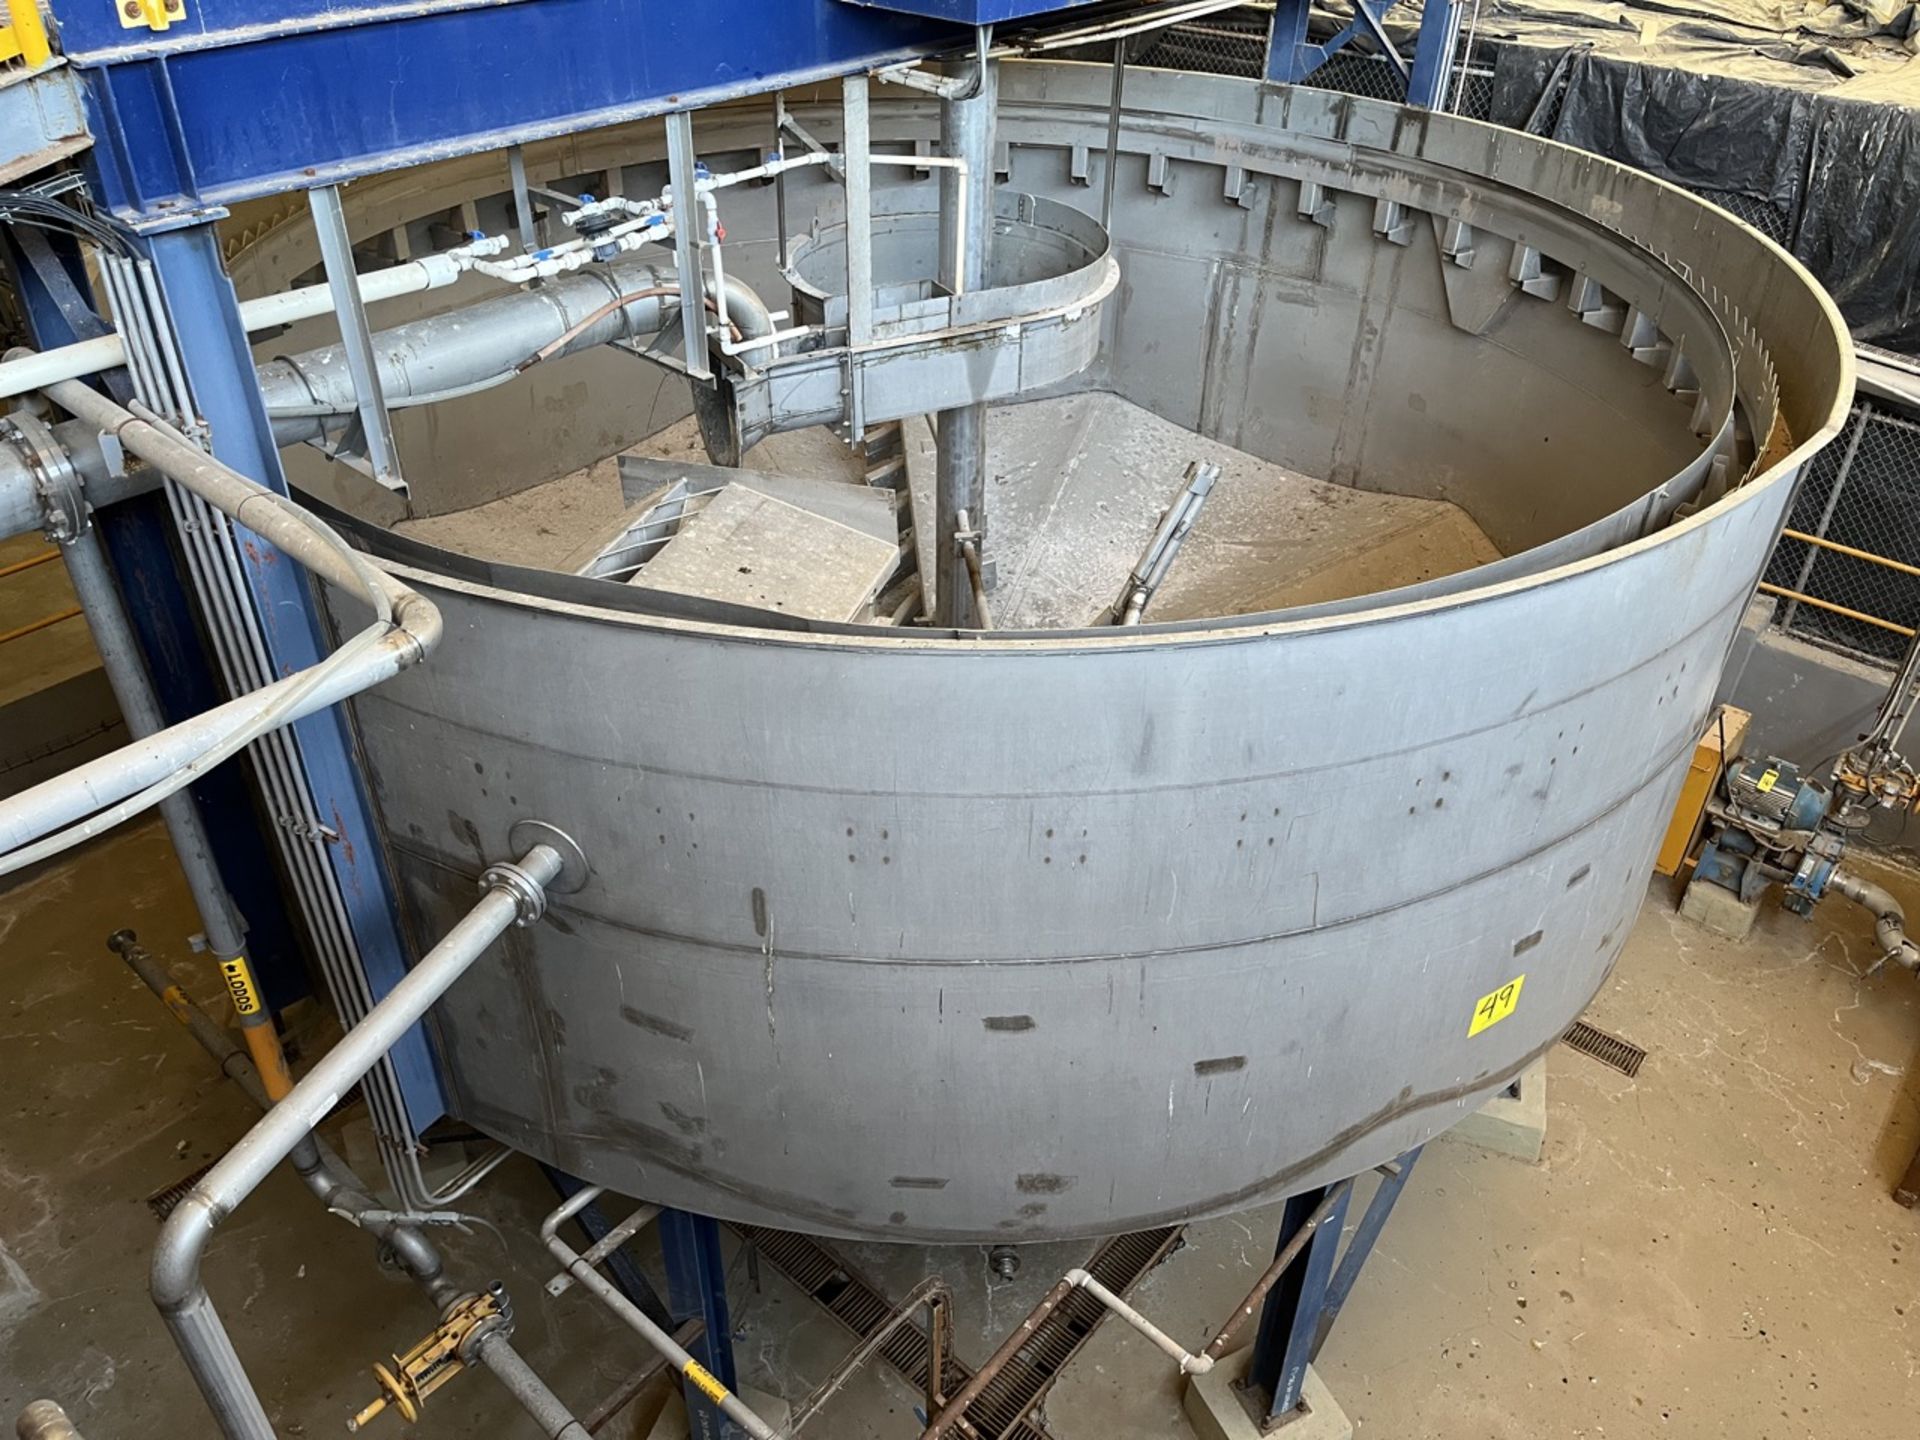 Stainless steel storage tank, measuring approximately 7 meters in diameter x 5.50 meters in height - Image 11 of 20